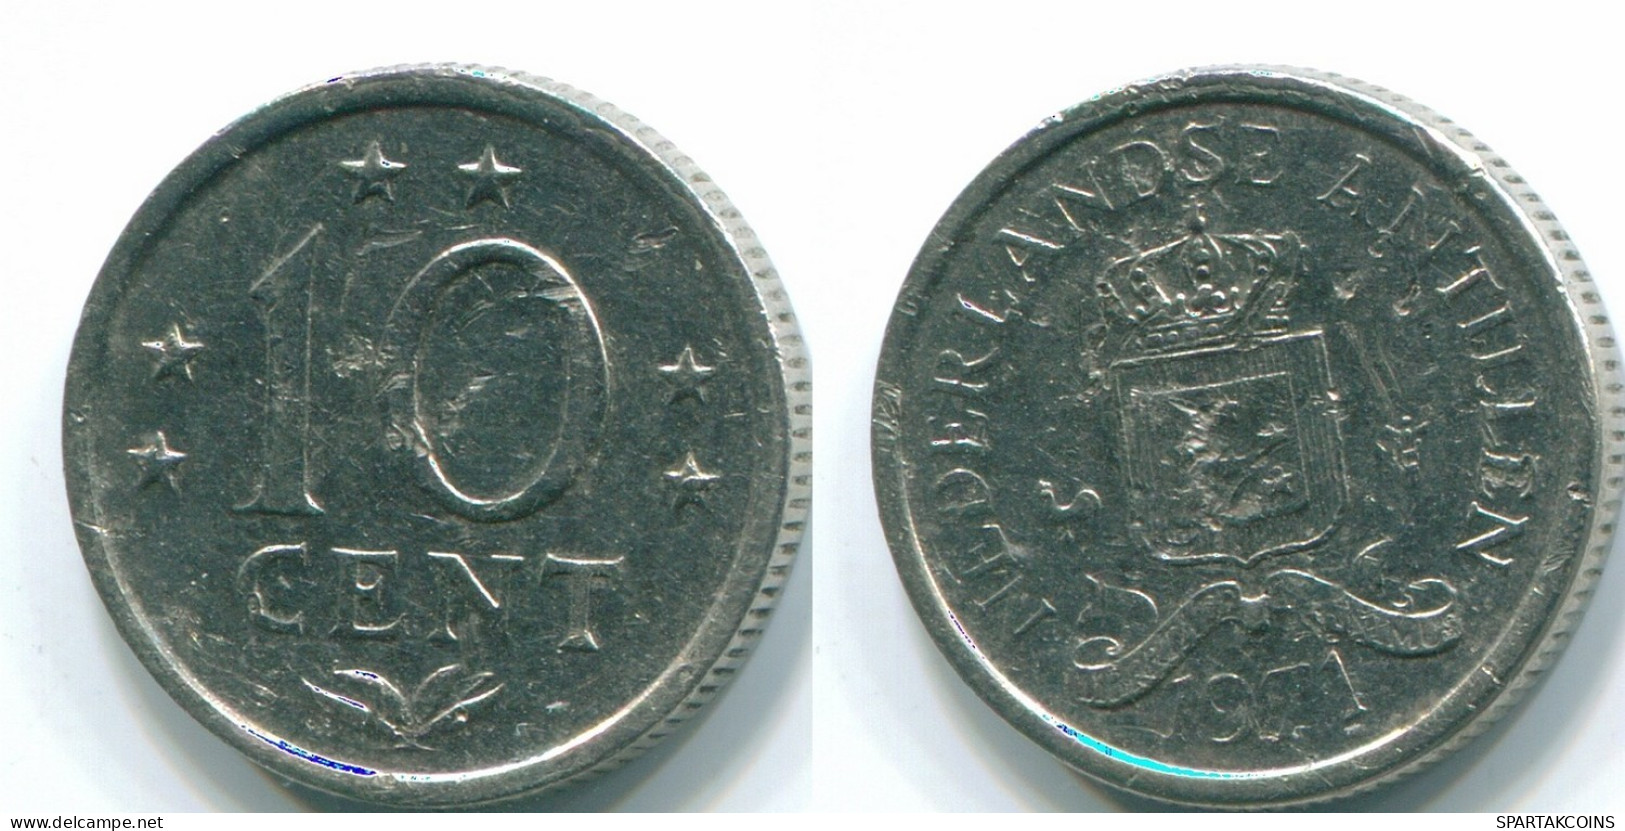 10 CENTS 1971 NIEDERLÄNDISCHE ANTILLEN Nickel Koloniale Münze #S13465.D.A - Niederländische Antillen